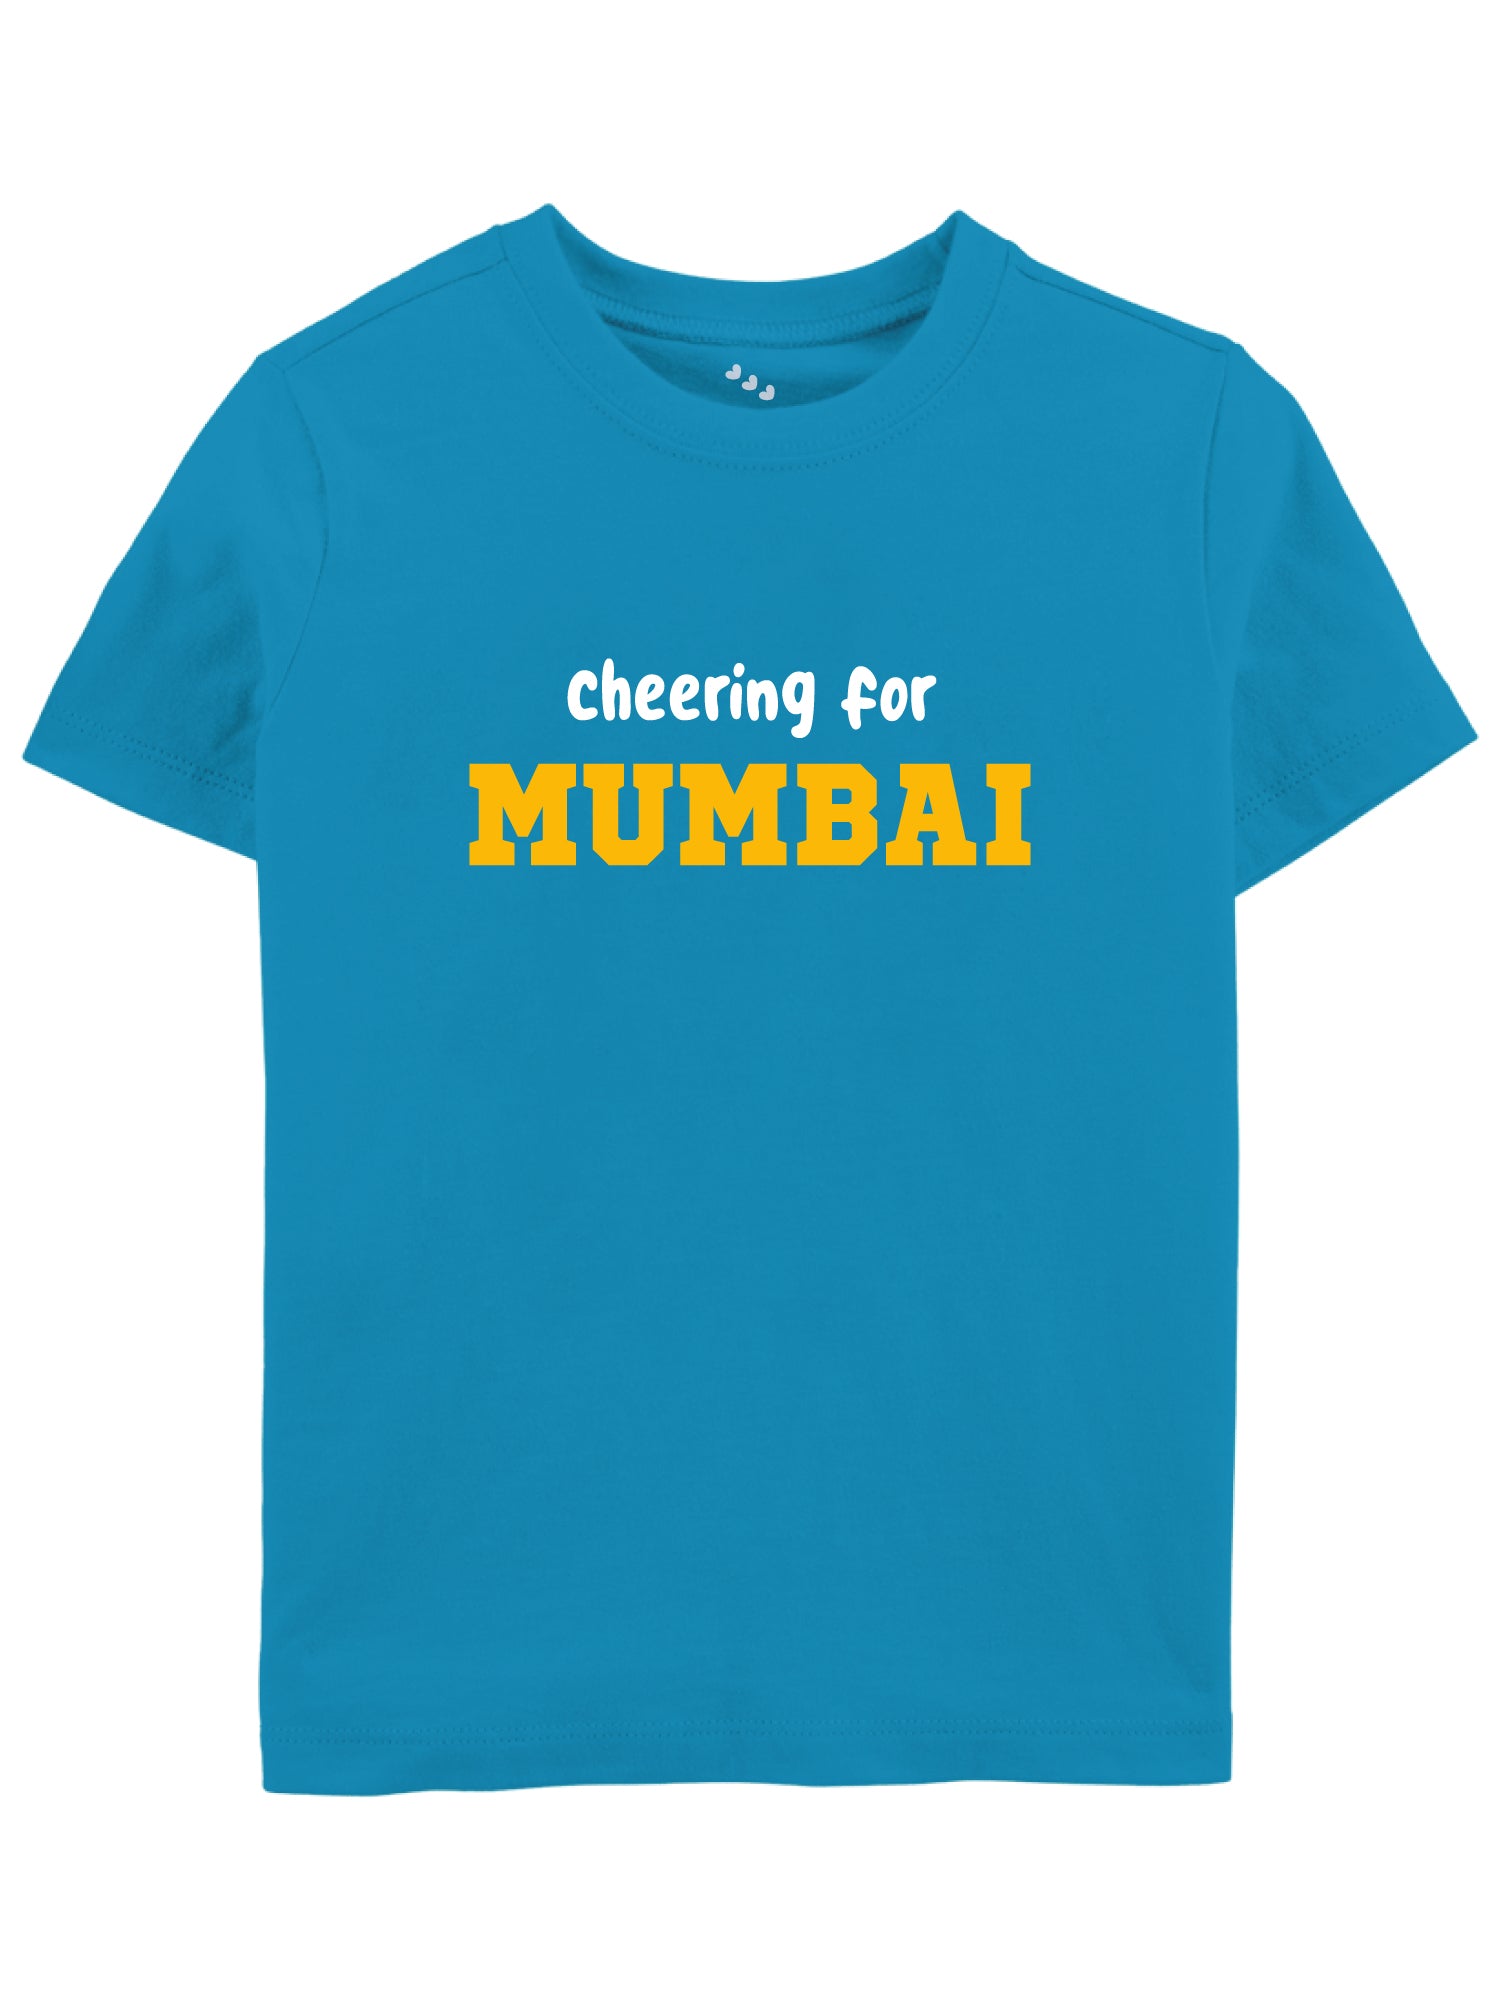 Cheering For Mumbai - Tee